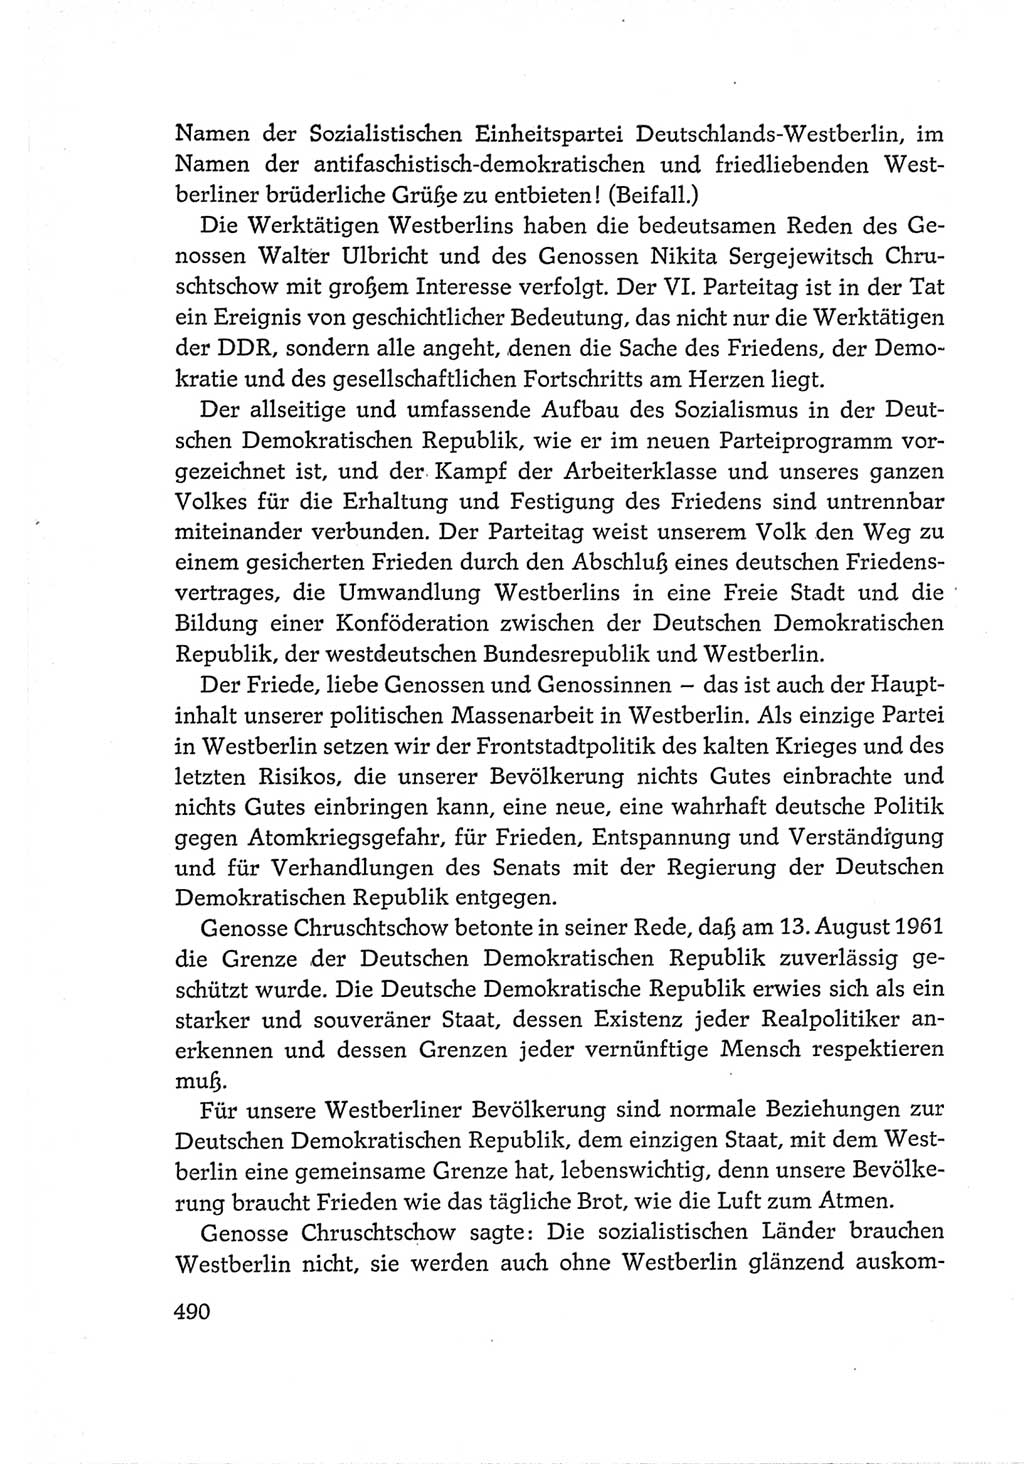 Protokoll der Verhandlungen des Ⅵ. Parteitages der Sozialistischen Einheitspartei Deutschlands (SED) [Deutsche Demokratische Republik (DDR)] 1963, Band Ⅰ, Seite 490 (Prot. Verh. Ⅵ. PT SED DDR 1963, Bd. Ⅰ, S. 490)